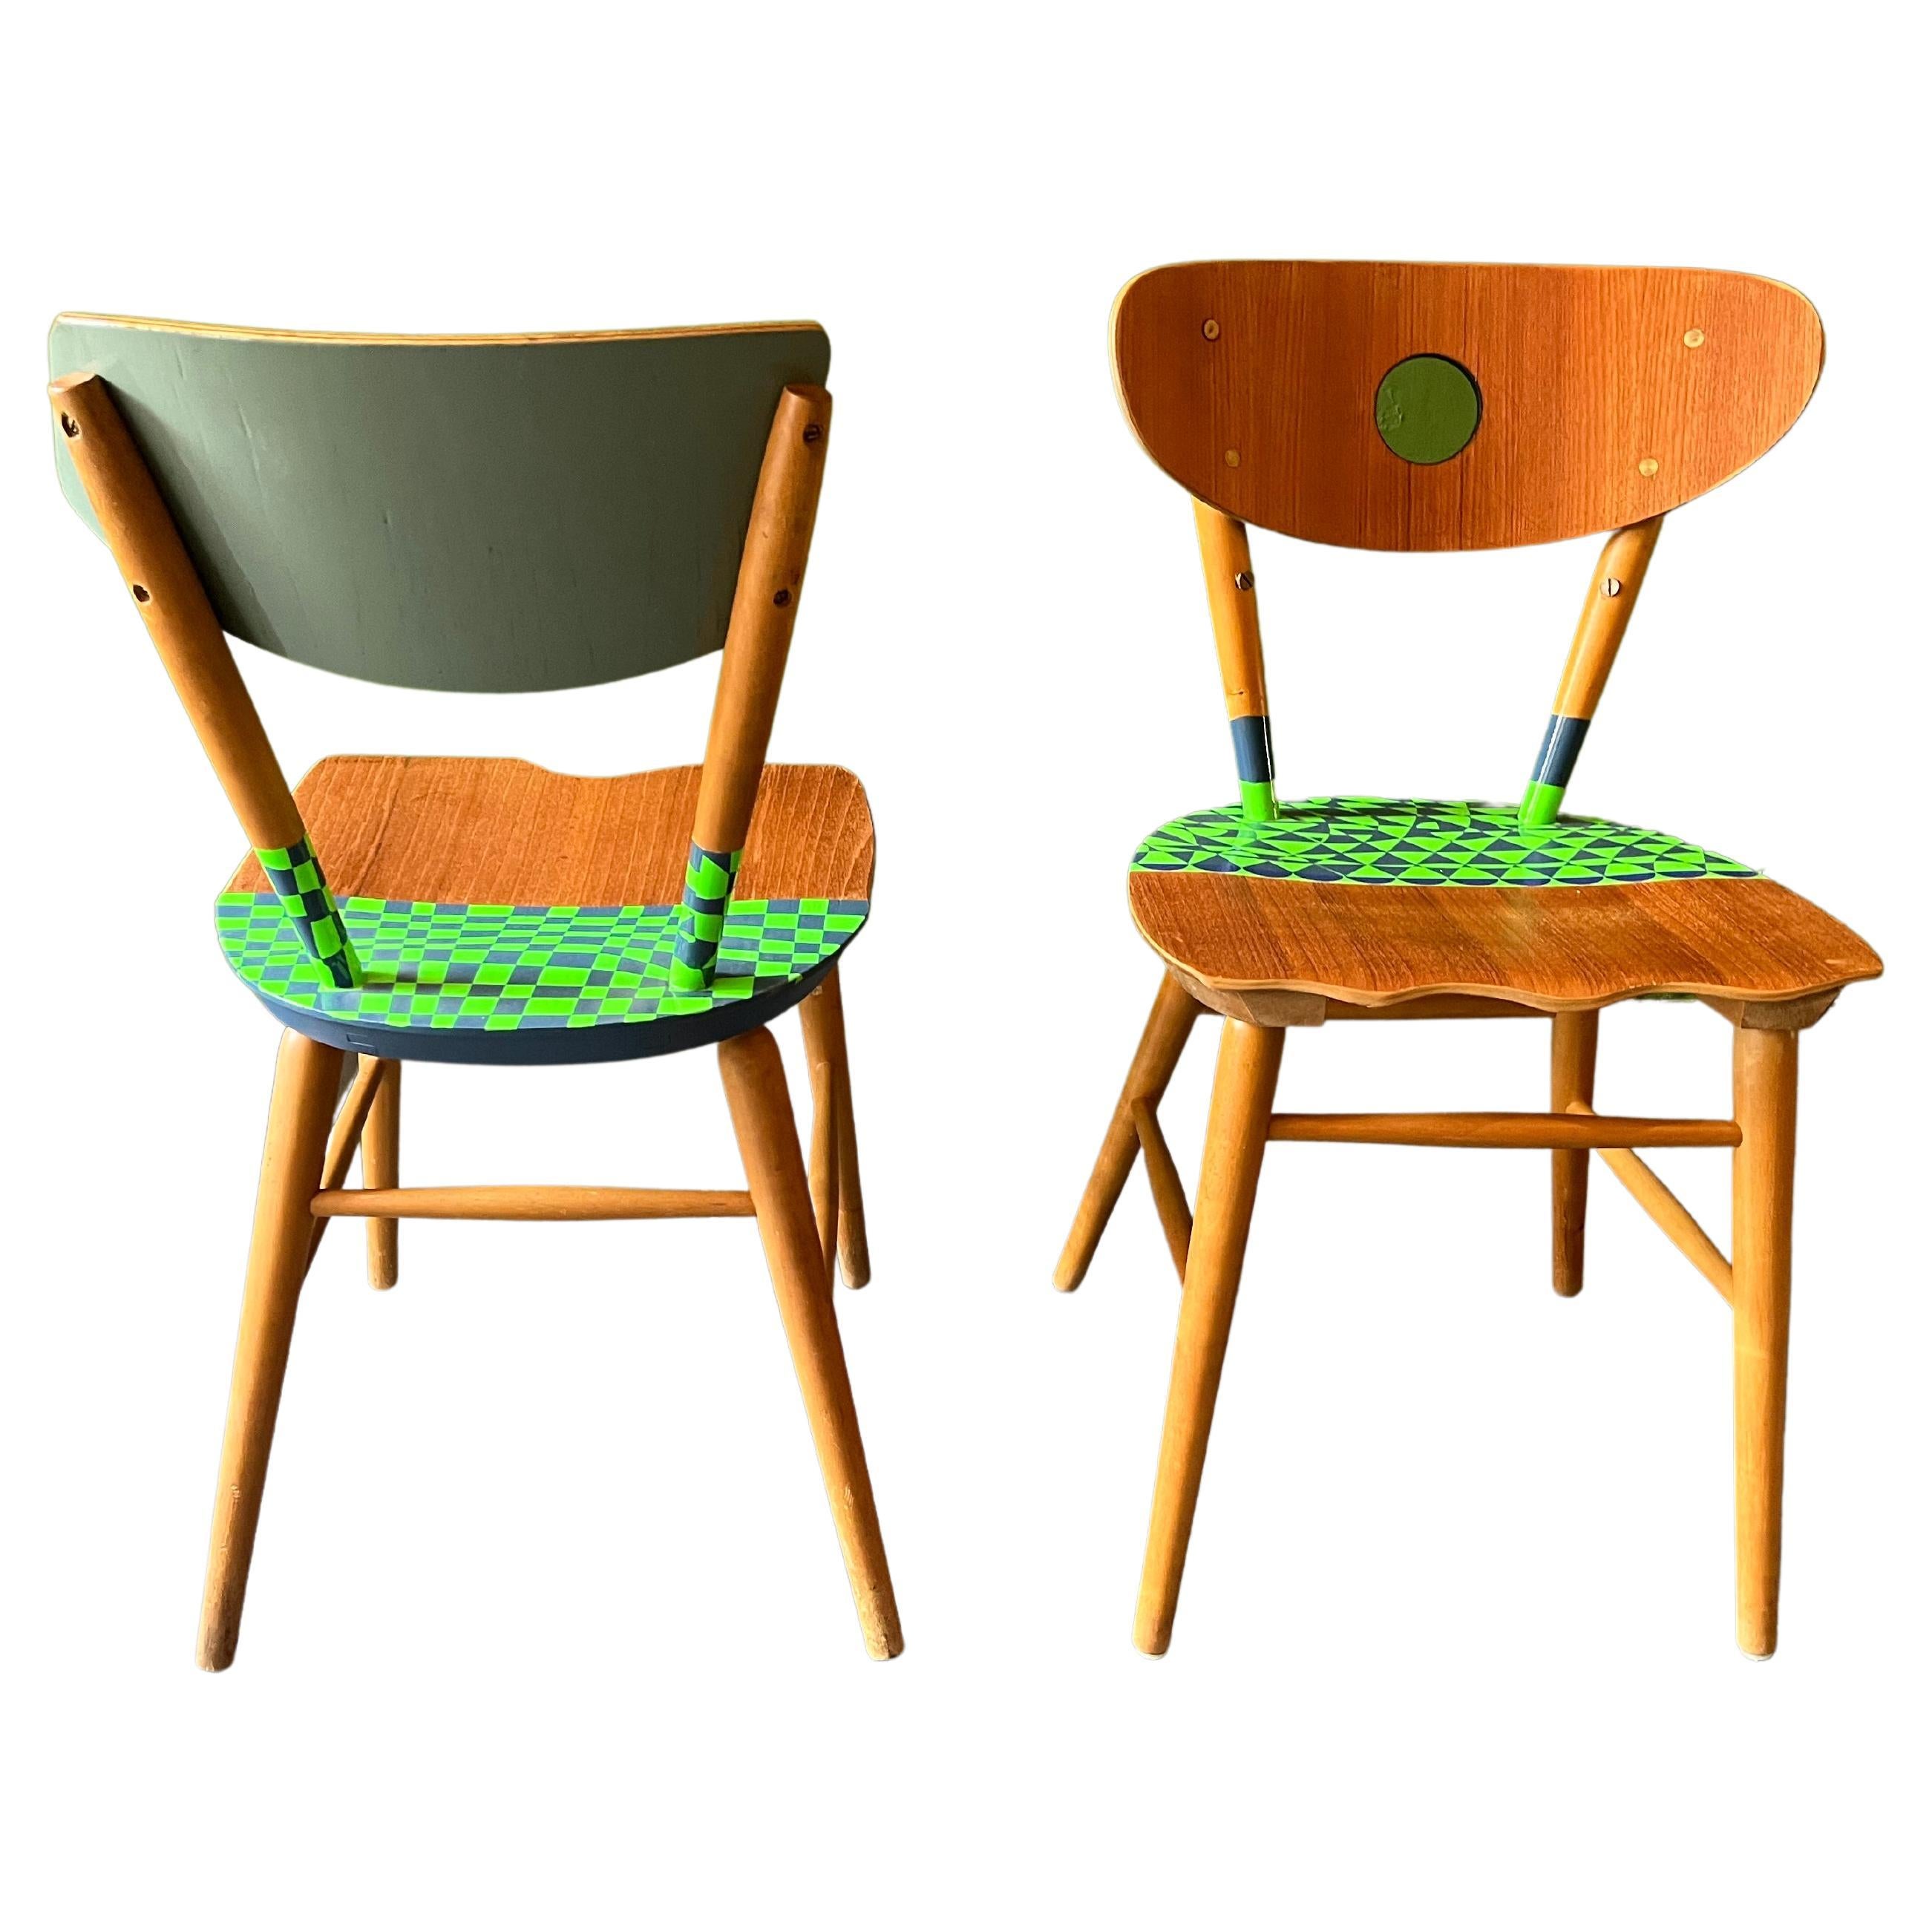 Deux chaises Yngve Ekström contemporaines. Découpé, peint et laqué. Motif inspiré de Grignani. 
J'apprends à partir d'un passé qui a été créé pour moi, une base pour construire mon propre travail.
Et créer de nouvelles voies pour l'art, le design